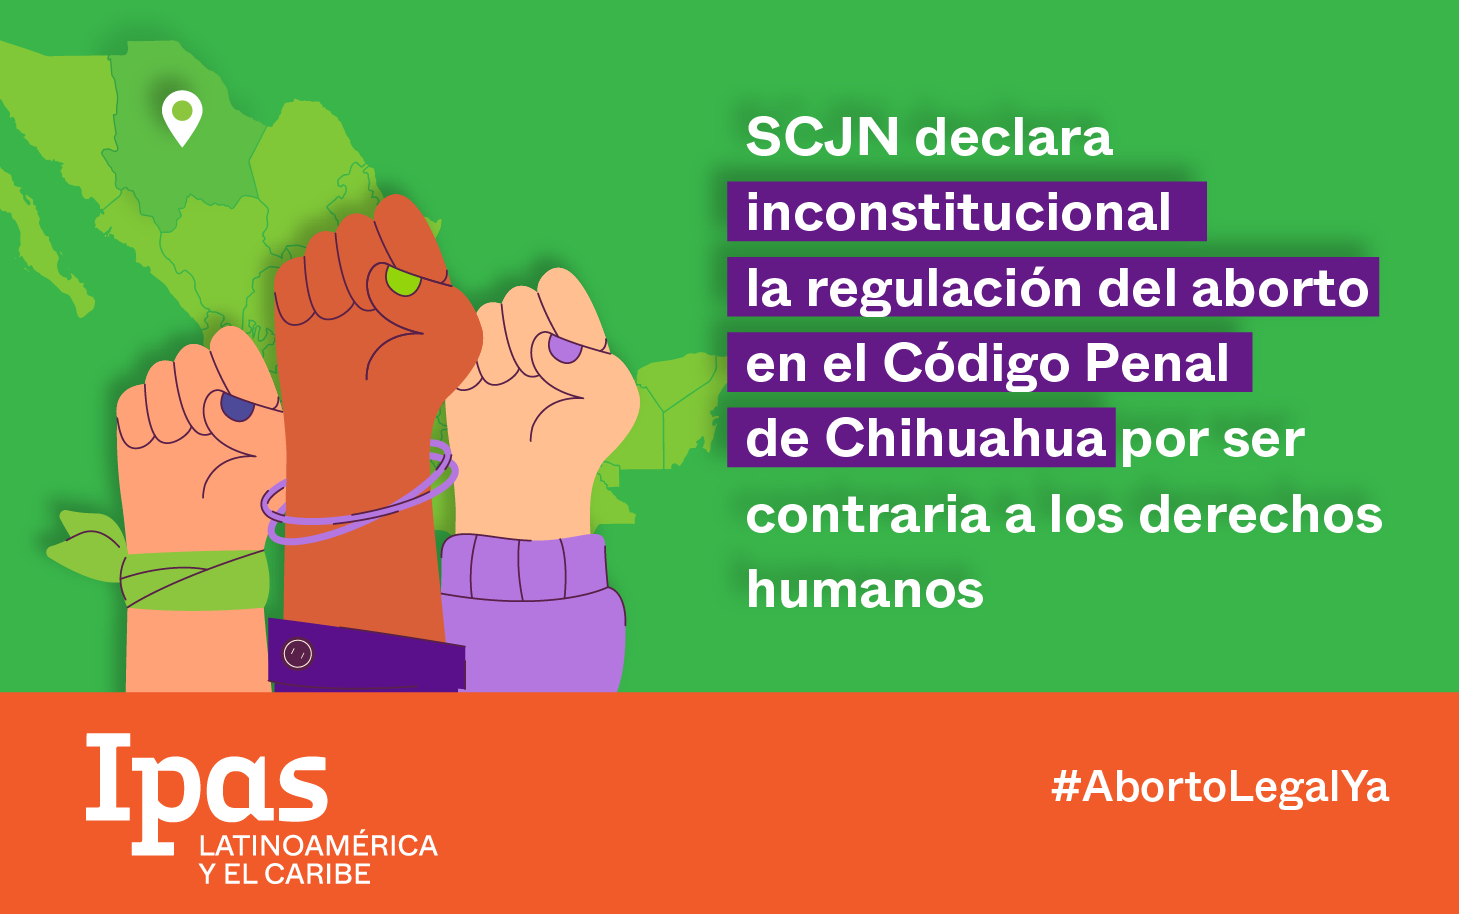 SCJN declara inconstitucional la regulacion del aborto del Código Penal de Chihuahua por ser contraria a los derechos humanos